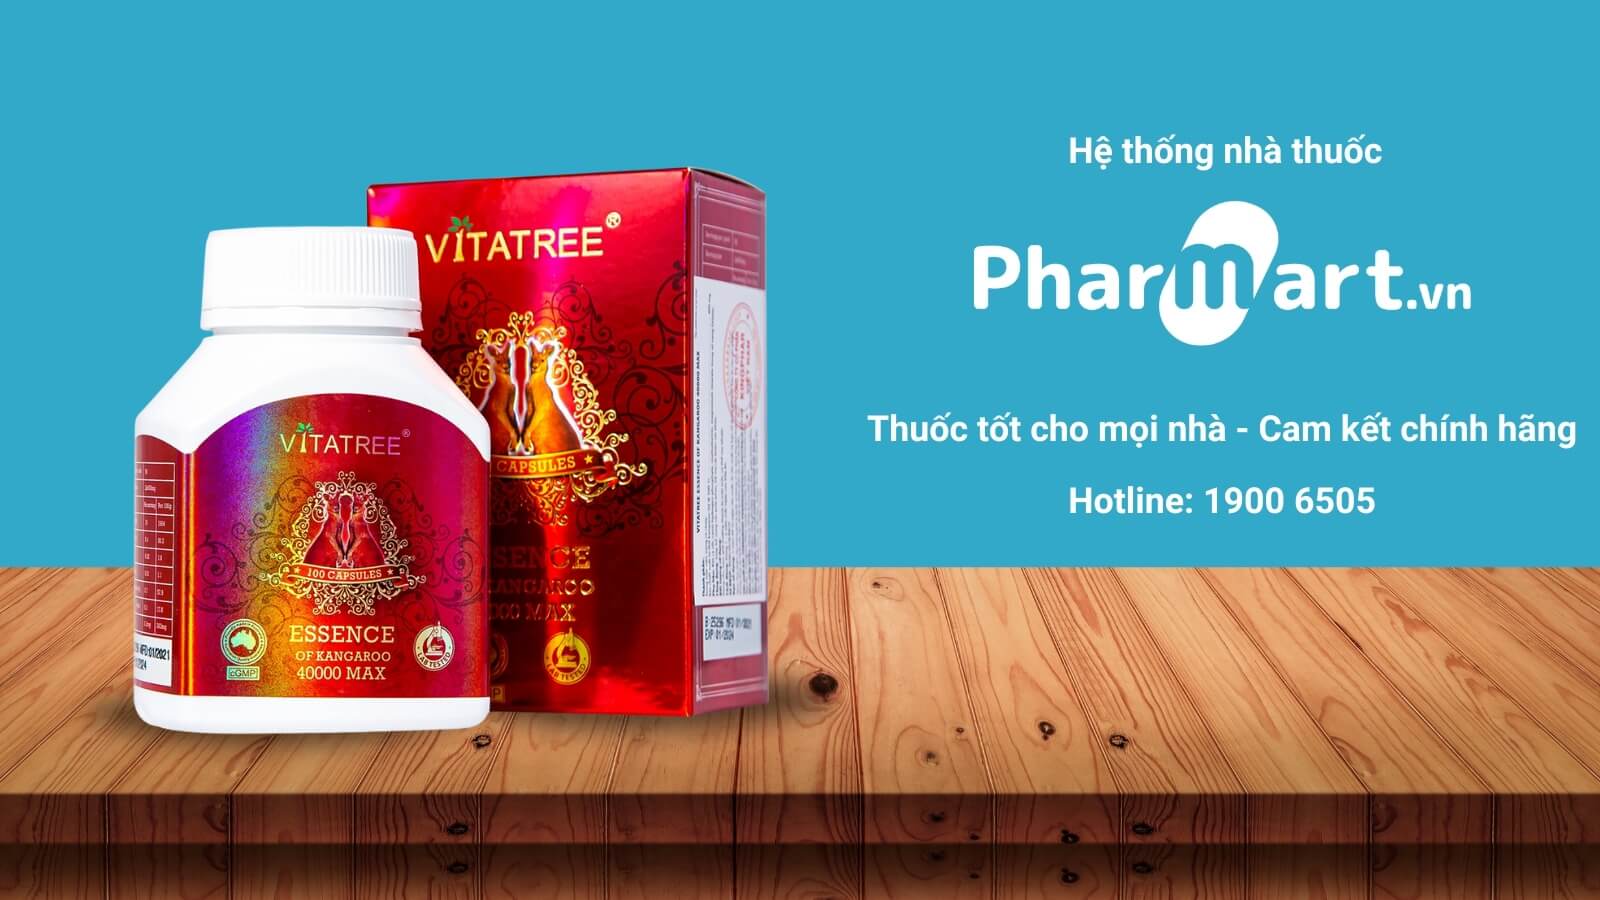 Pharmart.vn cung cấp Vitatree Essence of Kangaroo 40000 max chính hãng